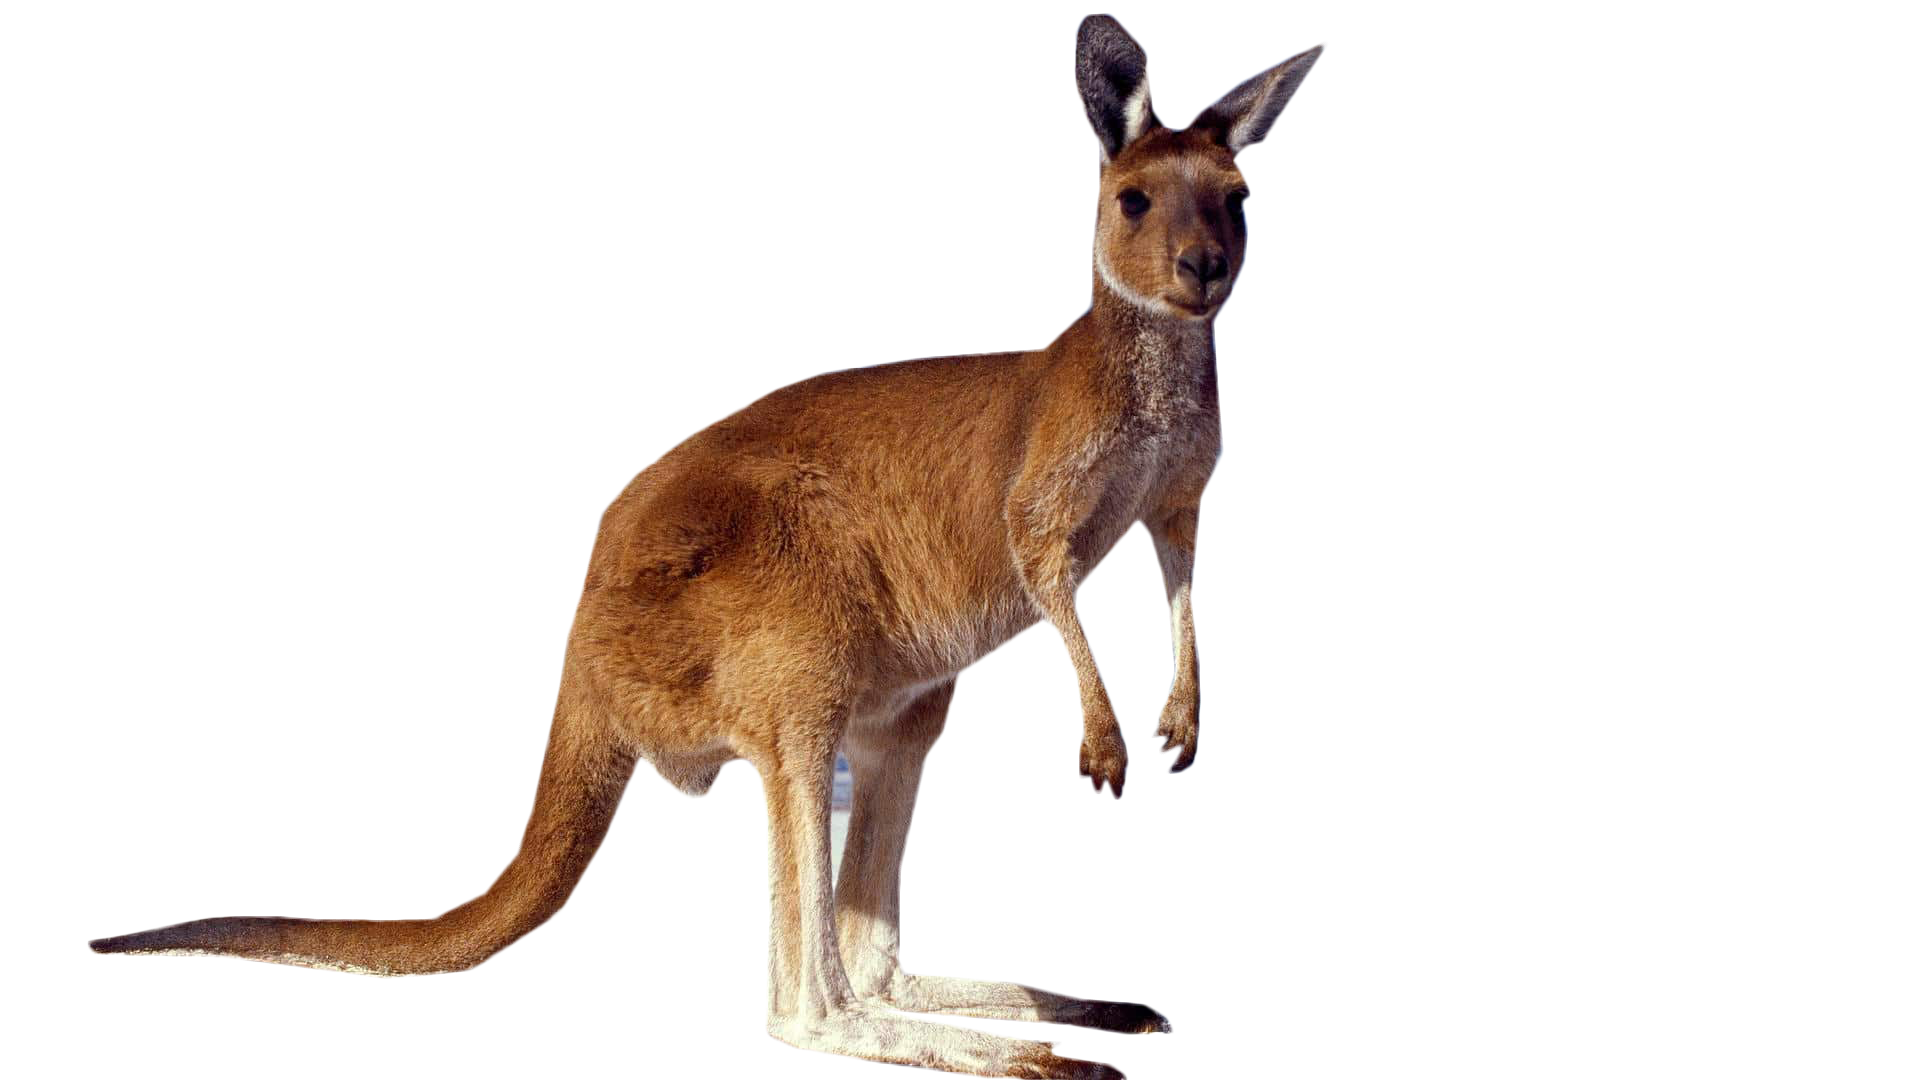 Wild Kangaroo Free Download Image PNG Image